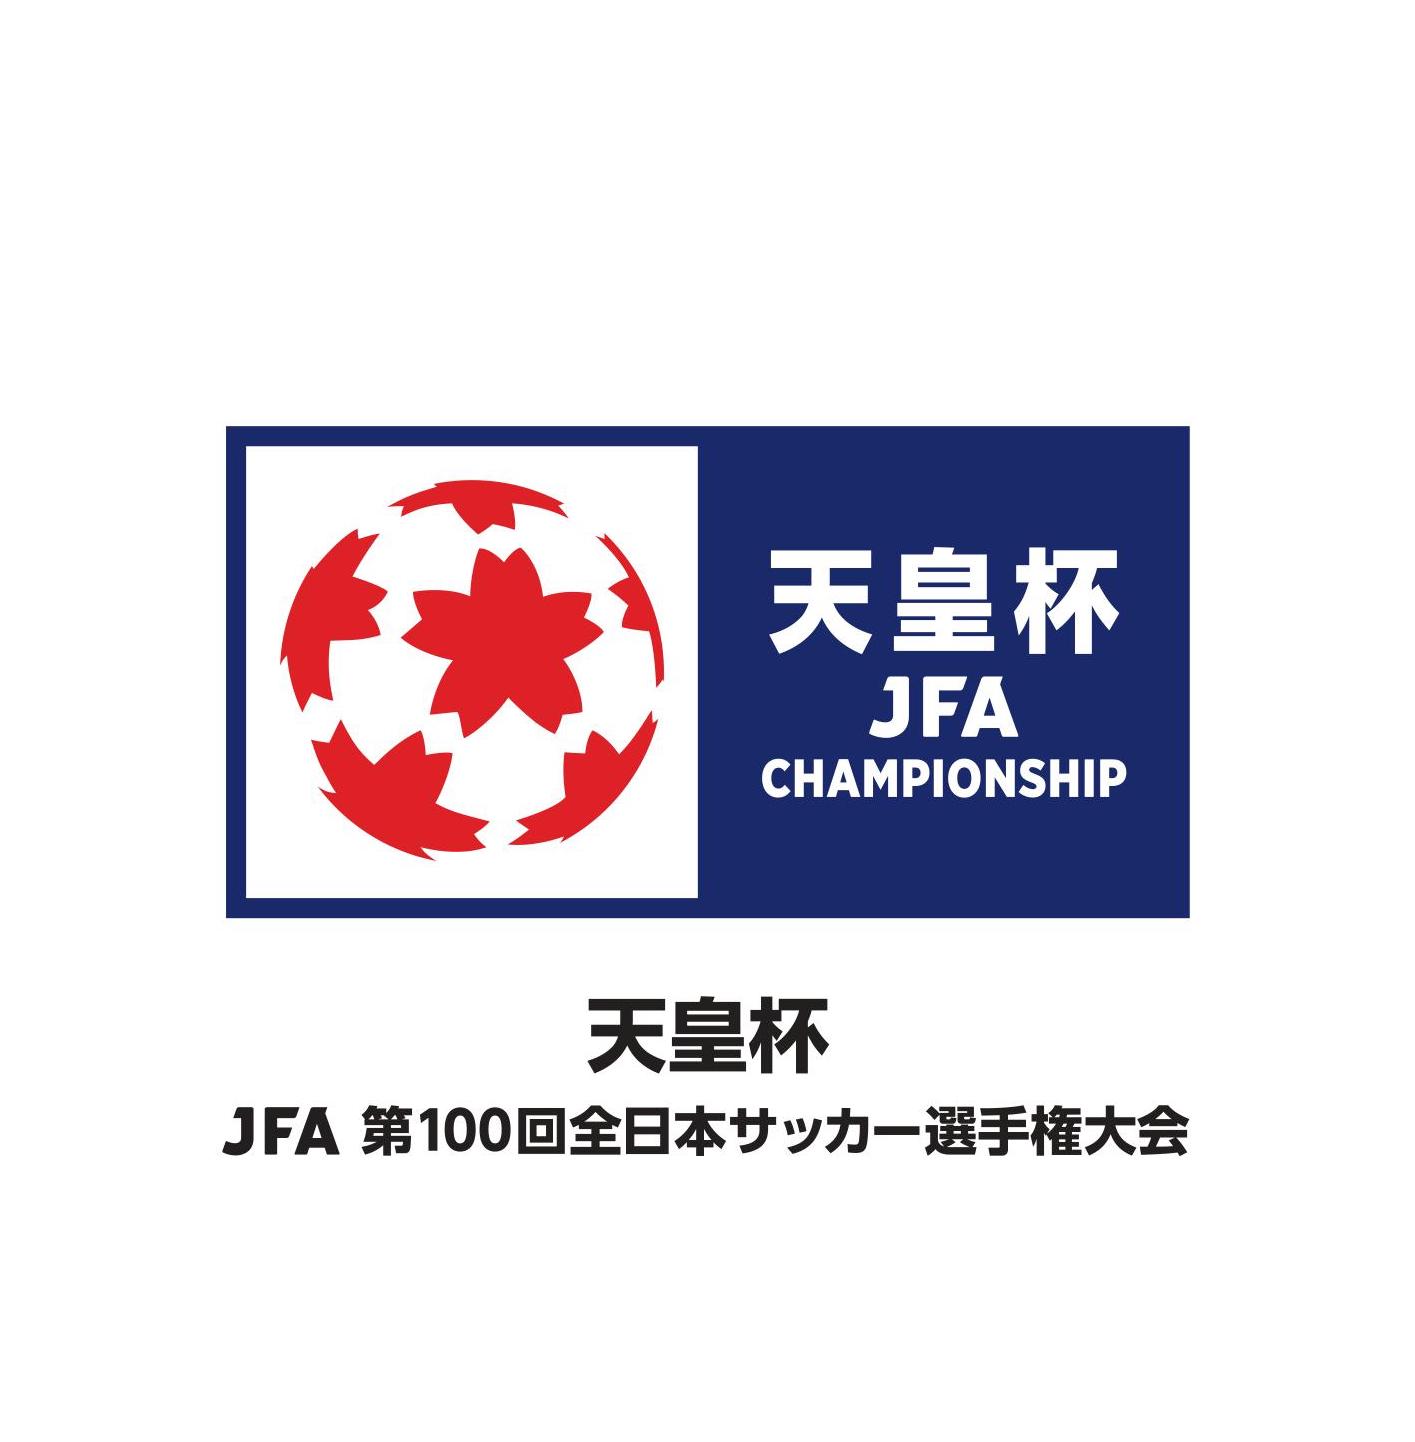 天皇杯 Jfa 第100回全日本サッカー選手権大会 横浜fc マッチスケジュールのお知らせ 横浜fcオフィシャルウェブサイト